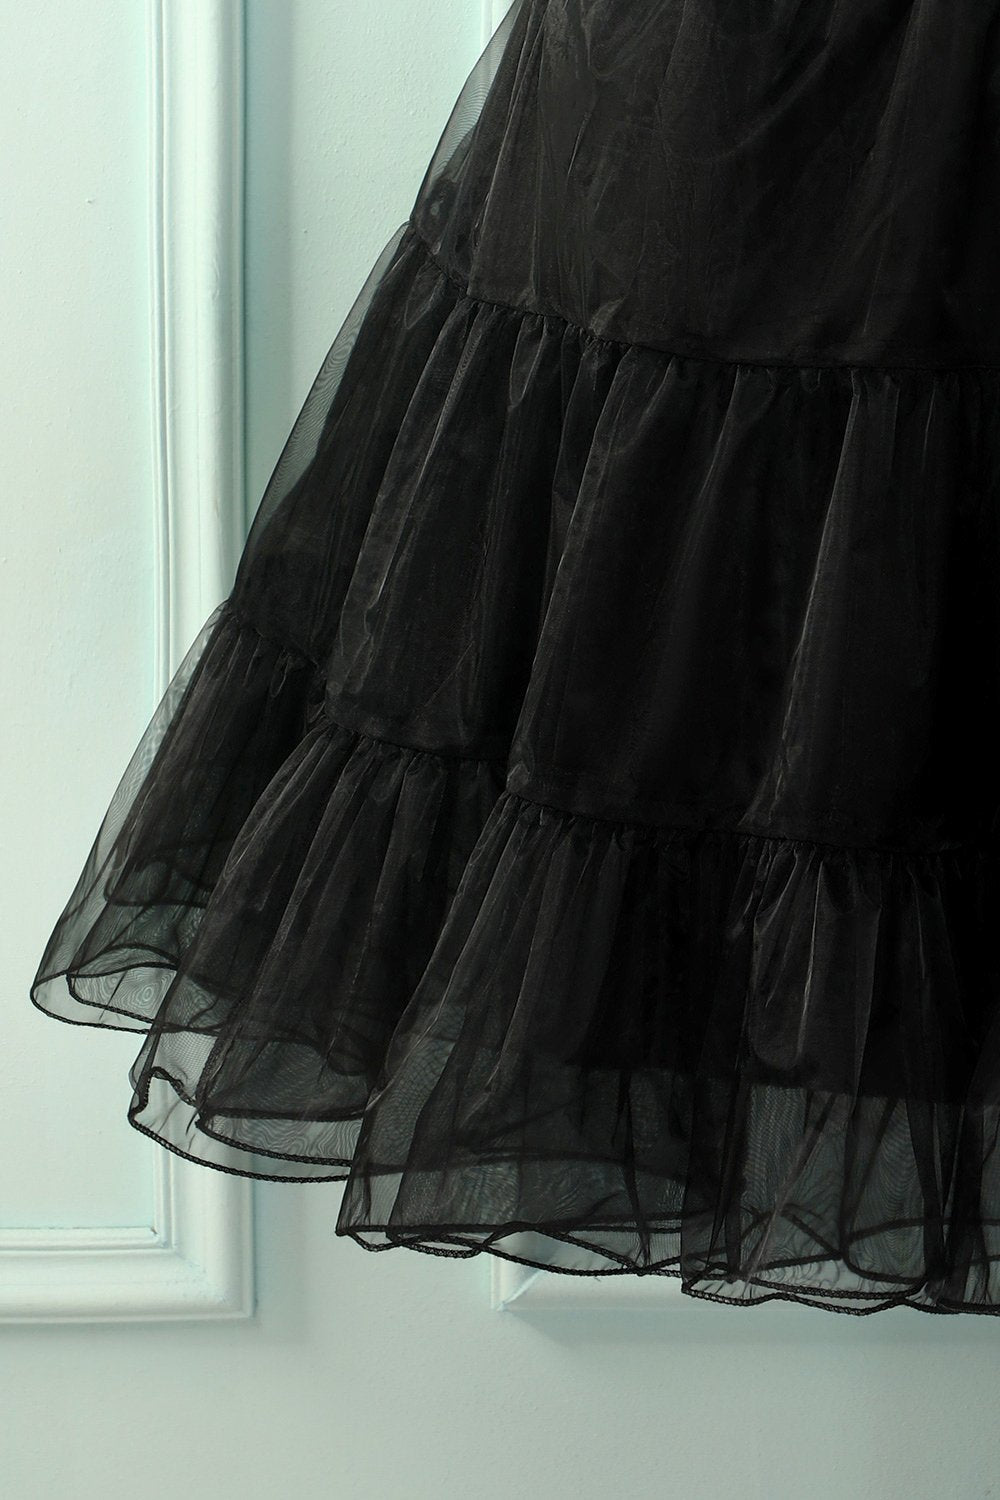 Black Tutu Petticoat